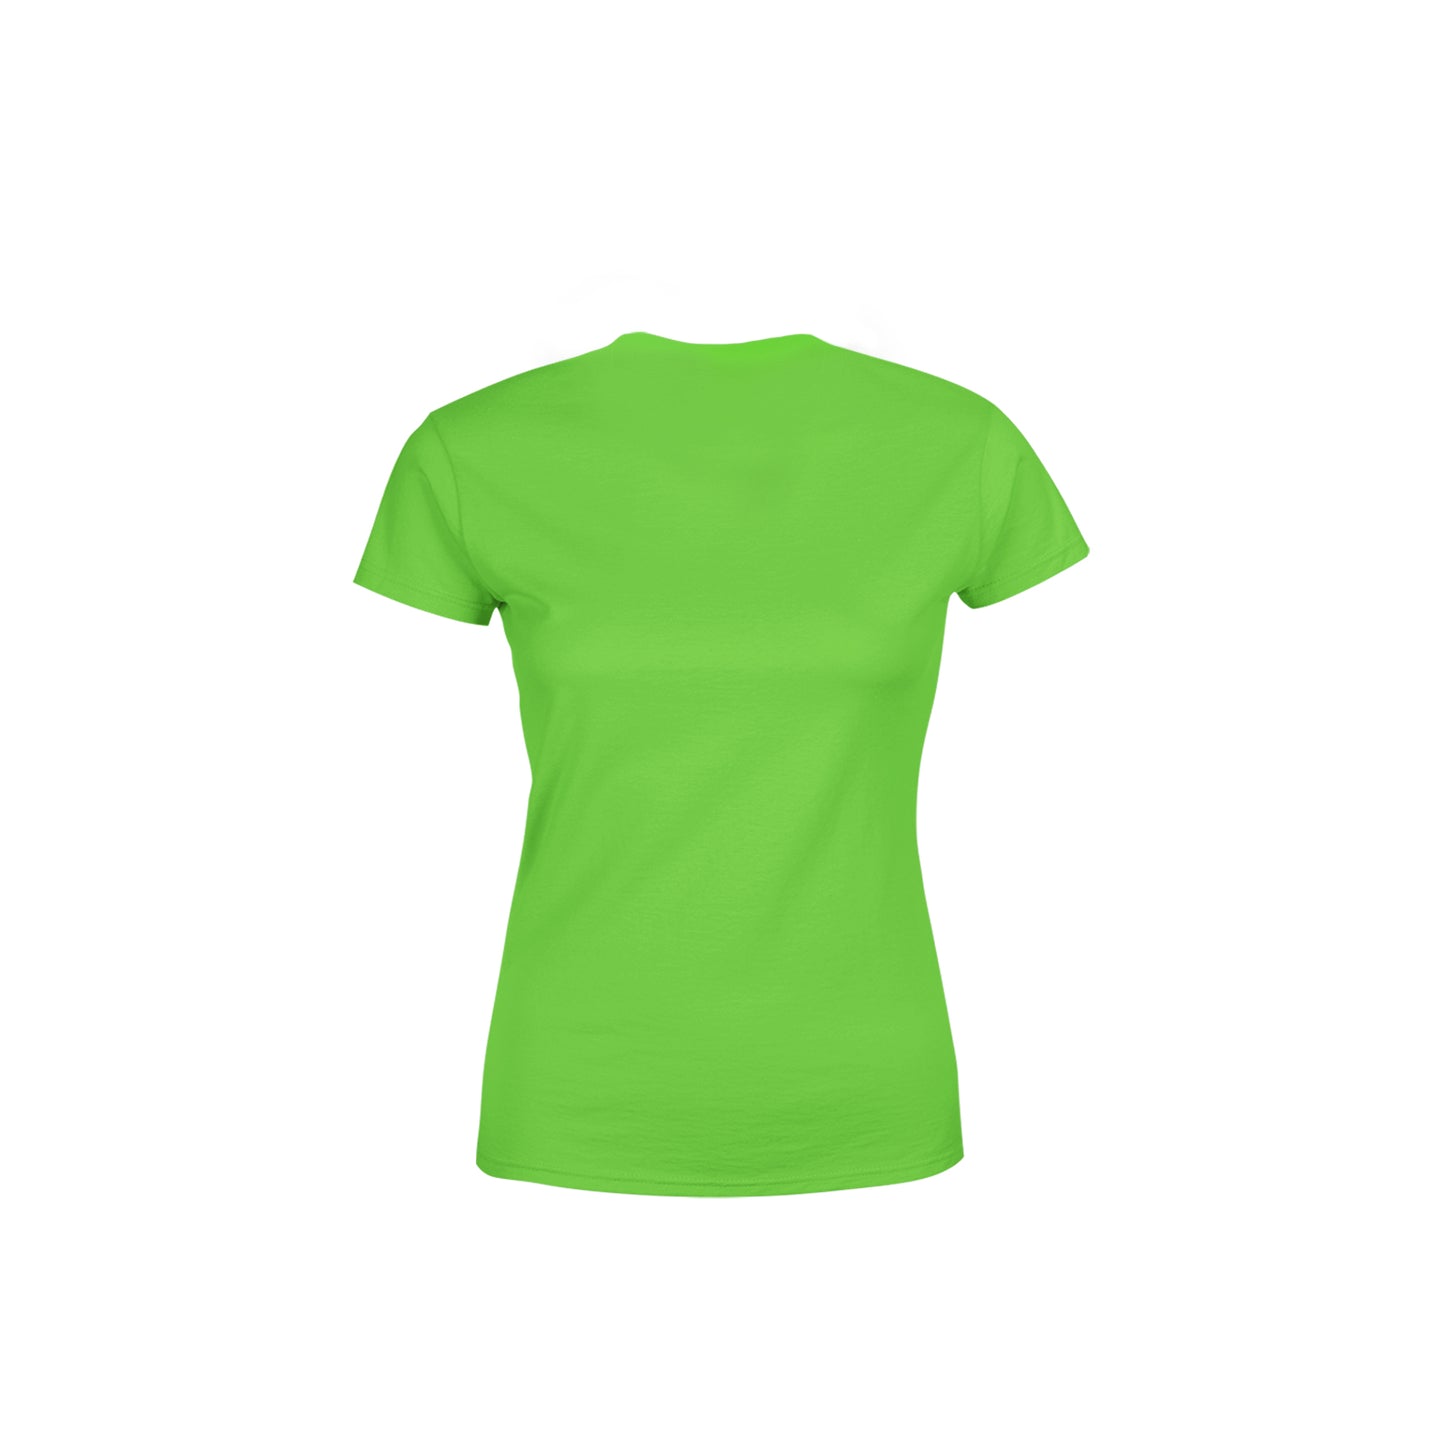 11 Number Women's T-Shirt (Liril Green)